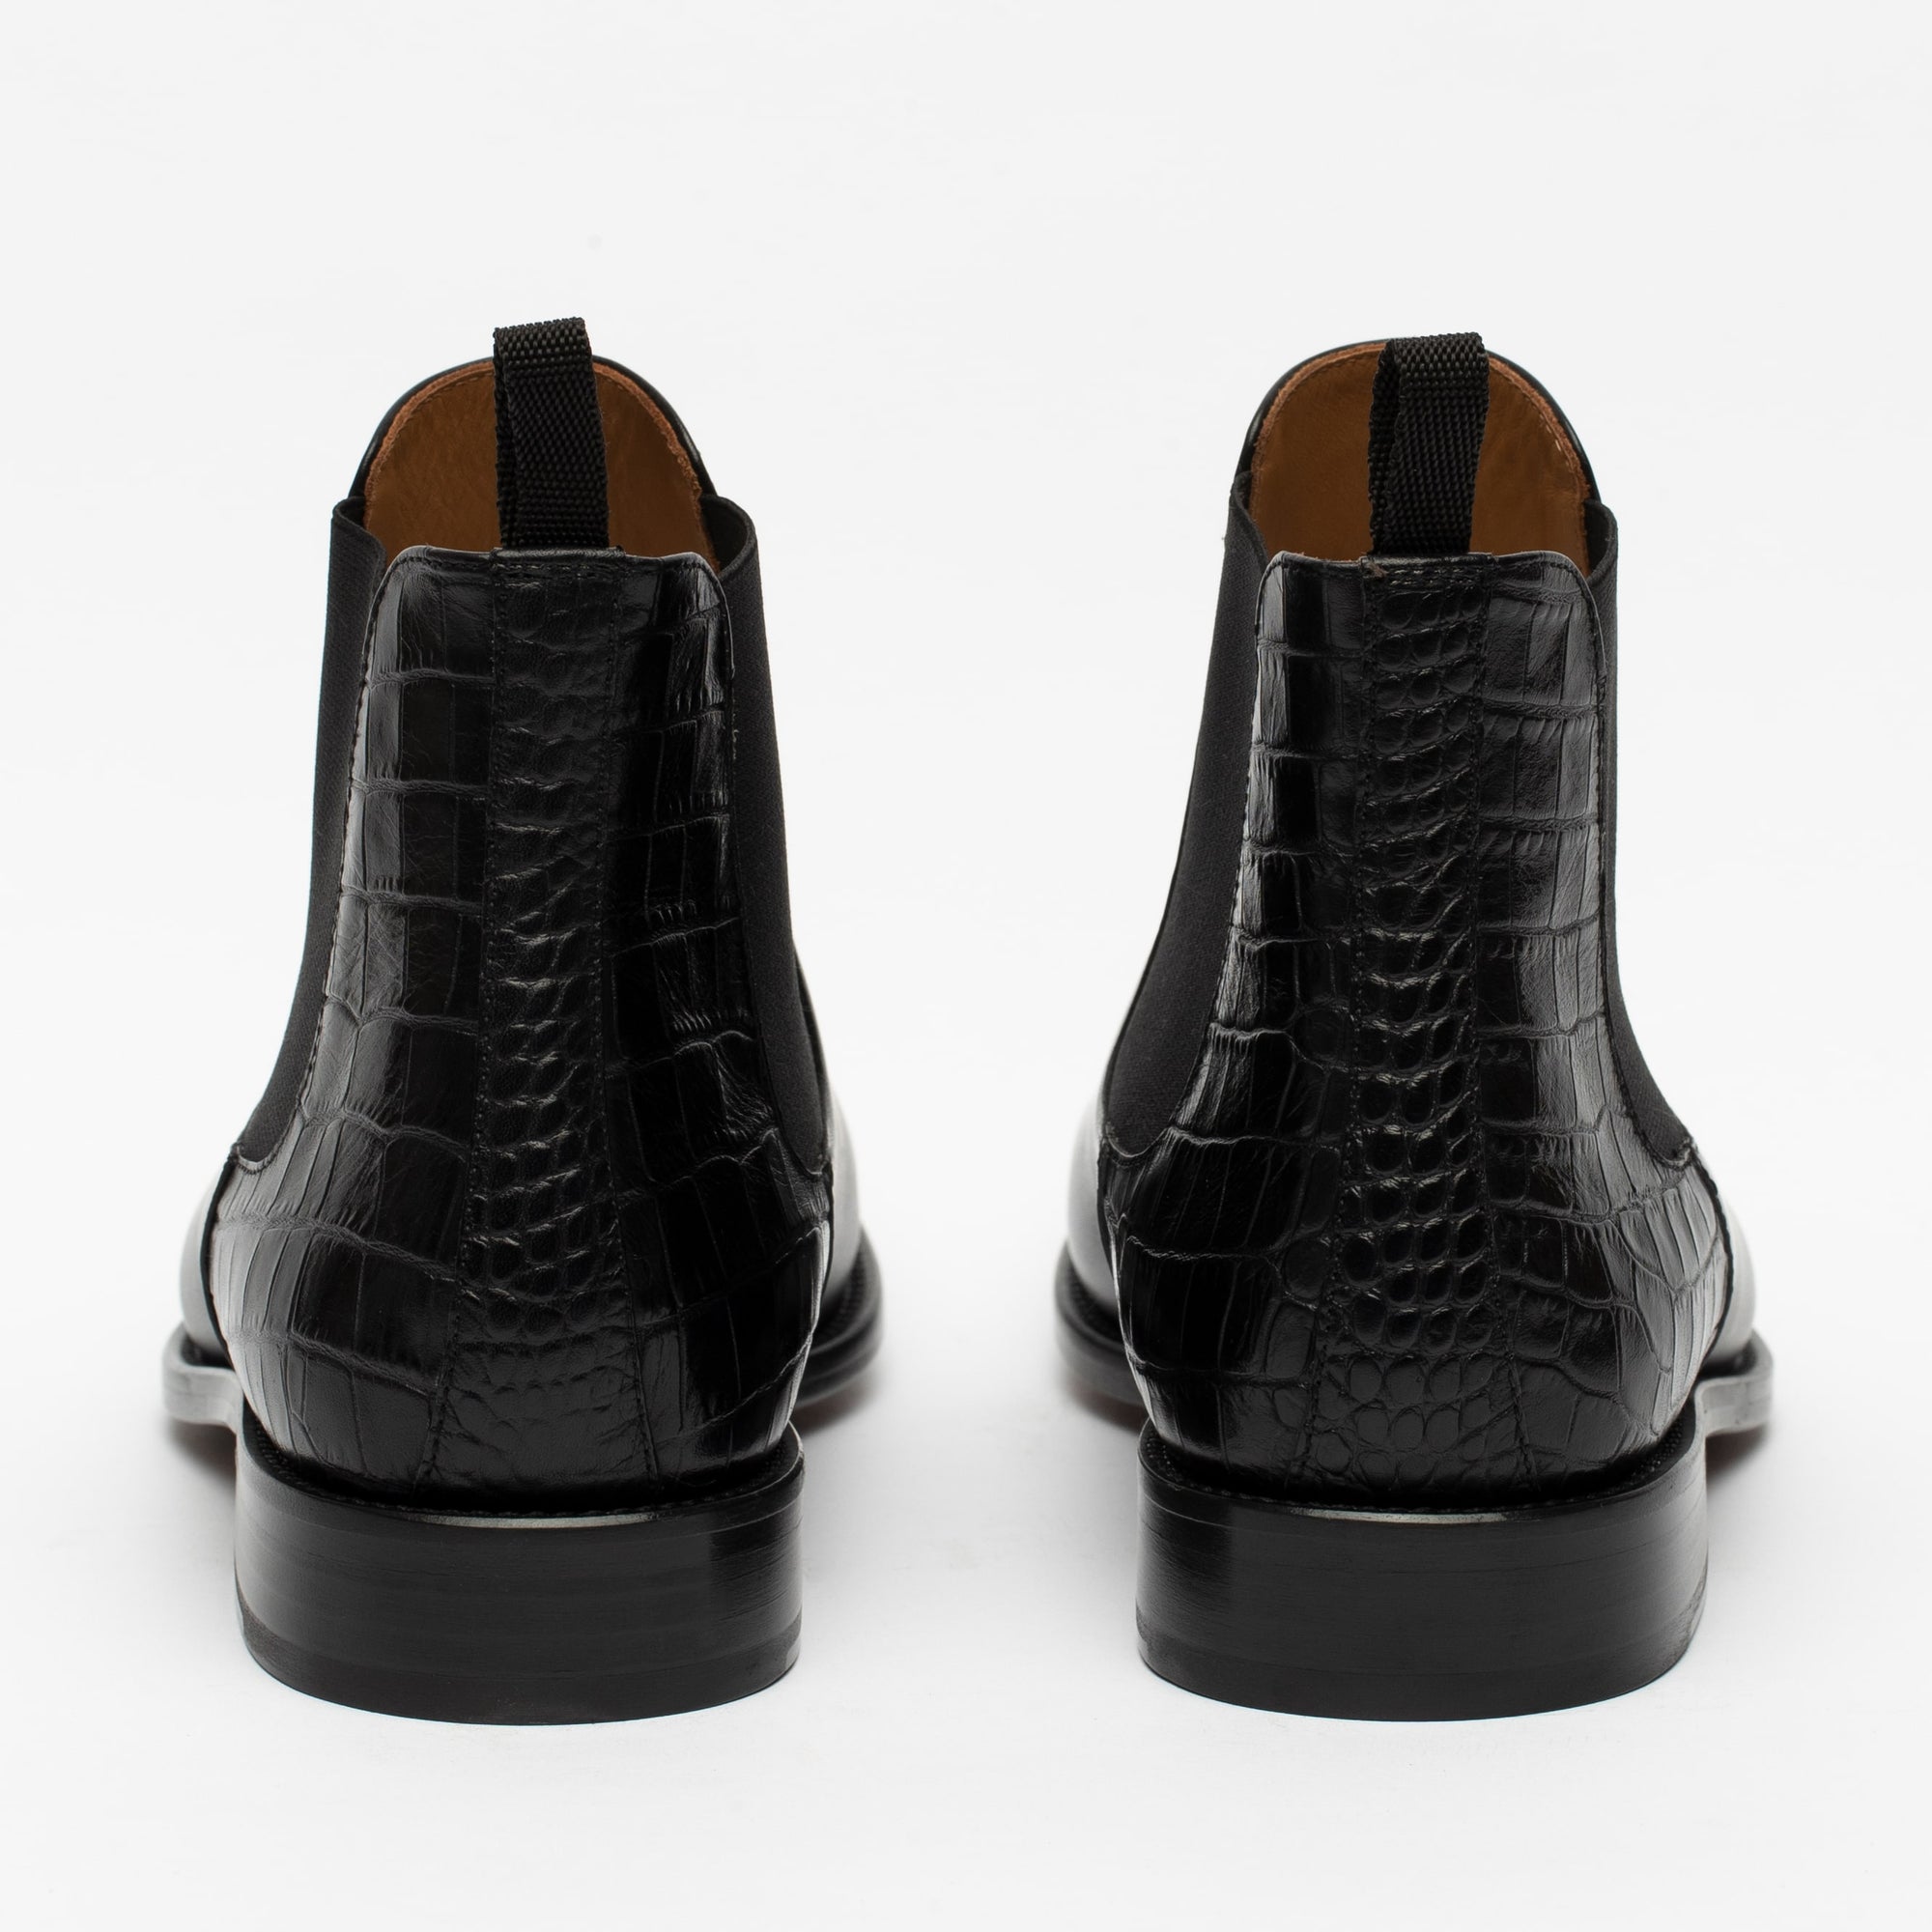 zadel Er is een trend Ziekte The Hiro Boot - Men's Black Leather Chelsea Boots | TAFT